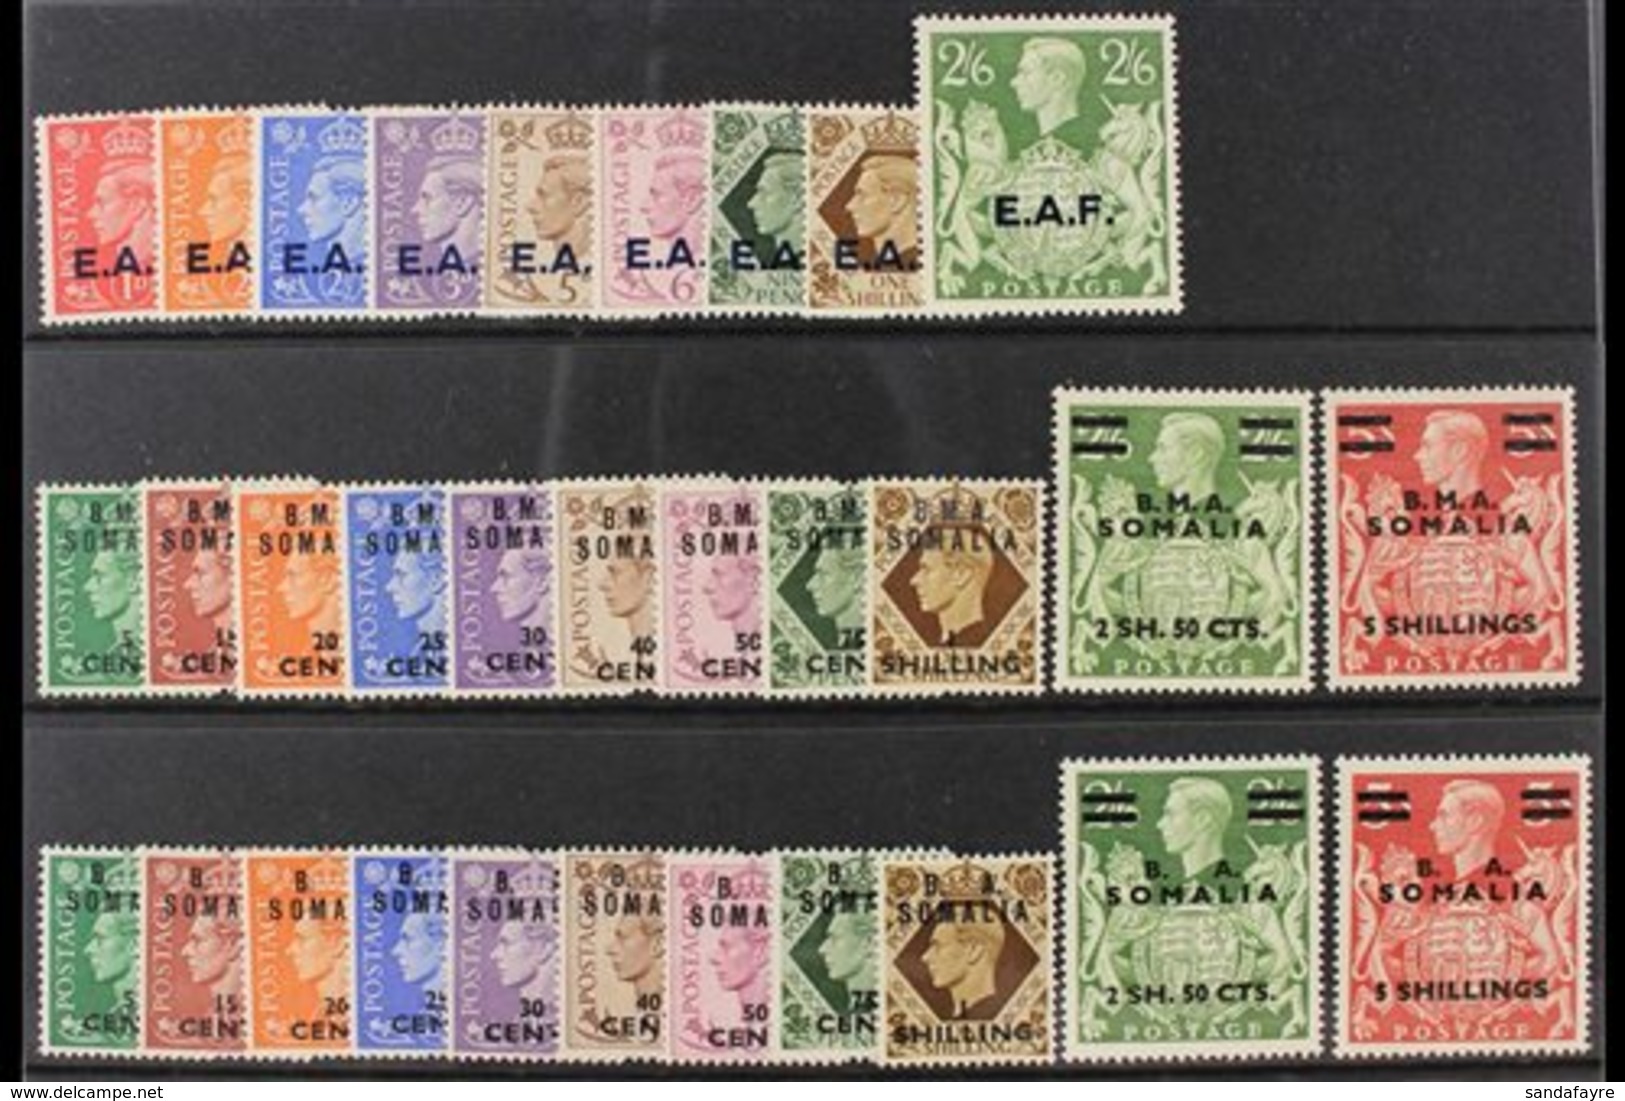 SOMALIA 1943-50 COMPLETE FINE MINT COLLECTION Presented On A Stock Card & Includes The 1938 "E.A..F." Opt'd Set, 1947 "B - Africa Orientale Italiana